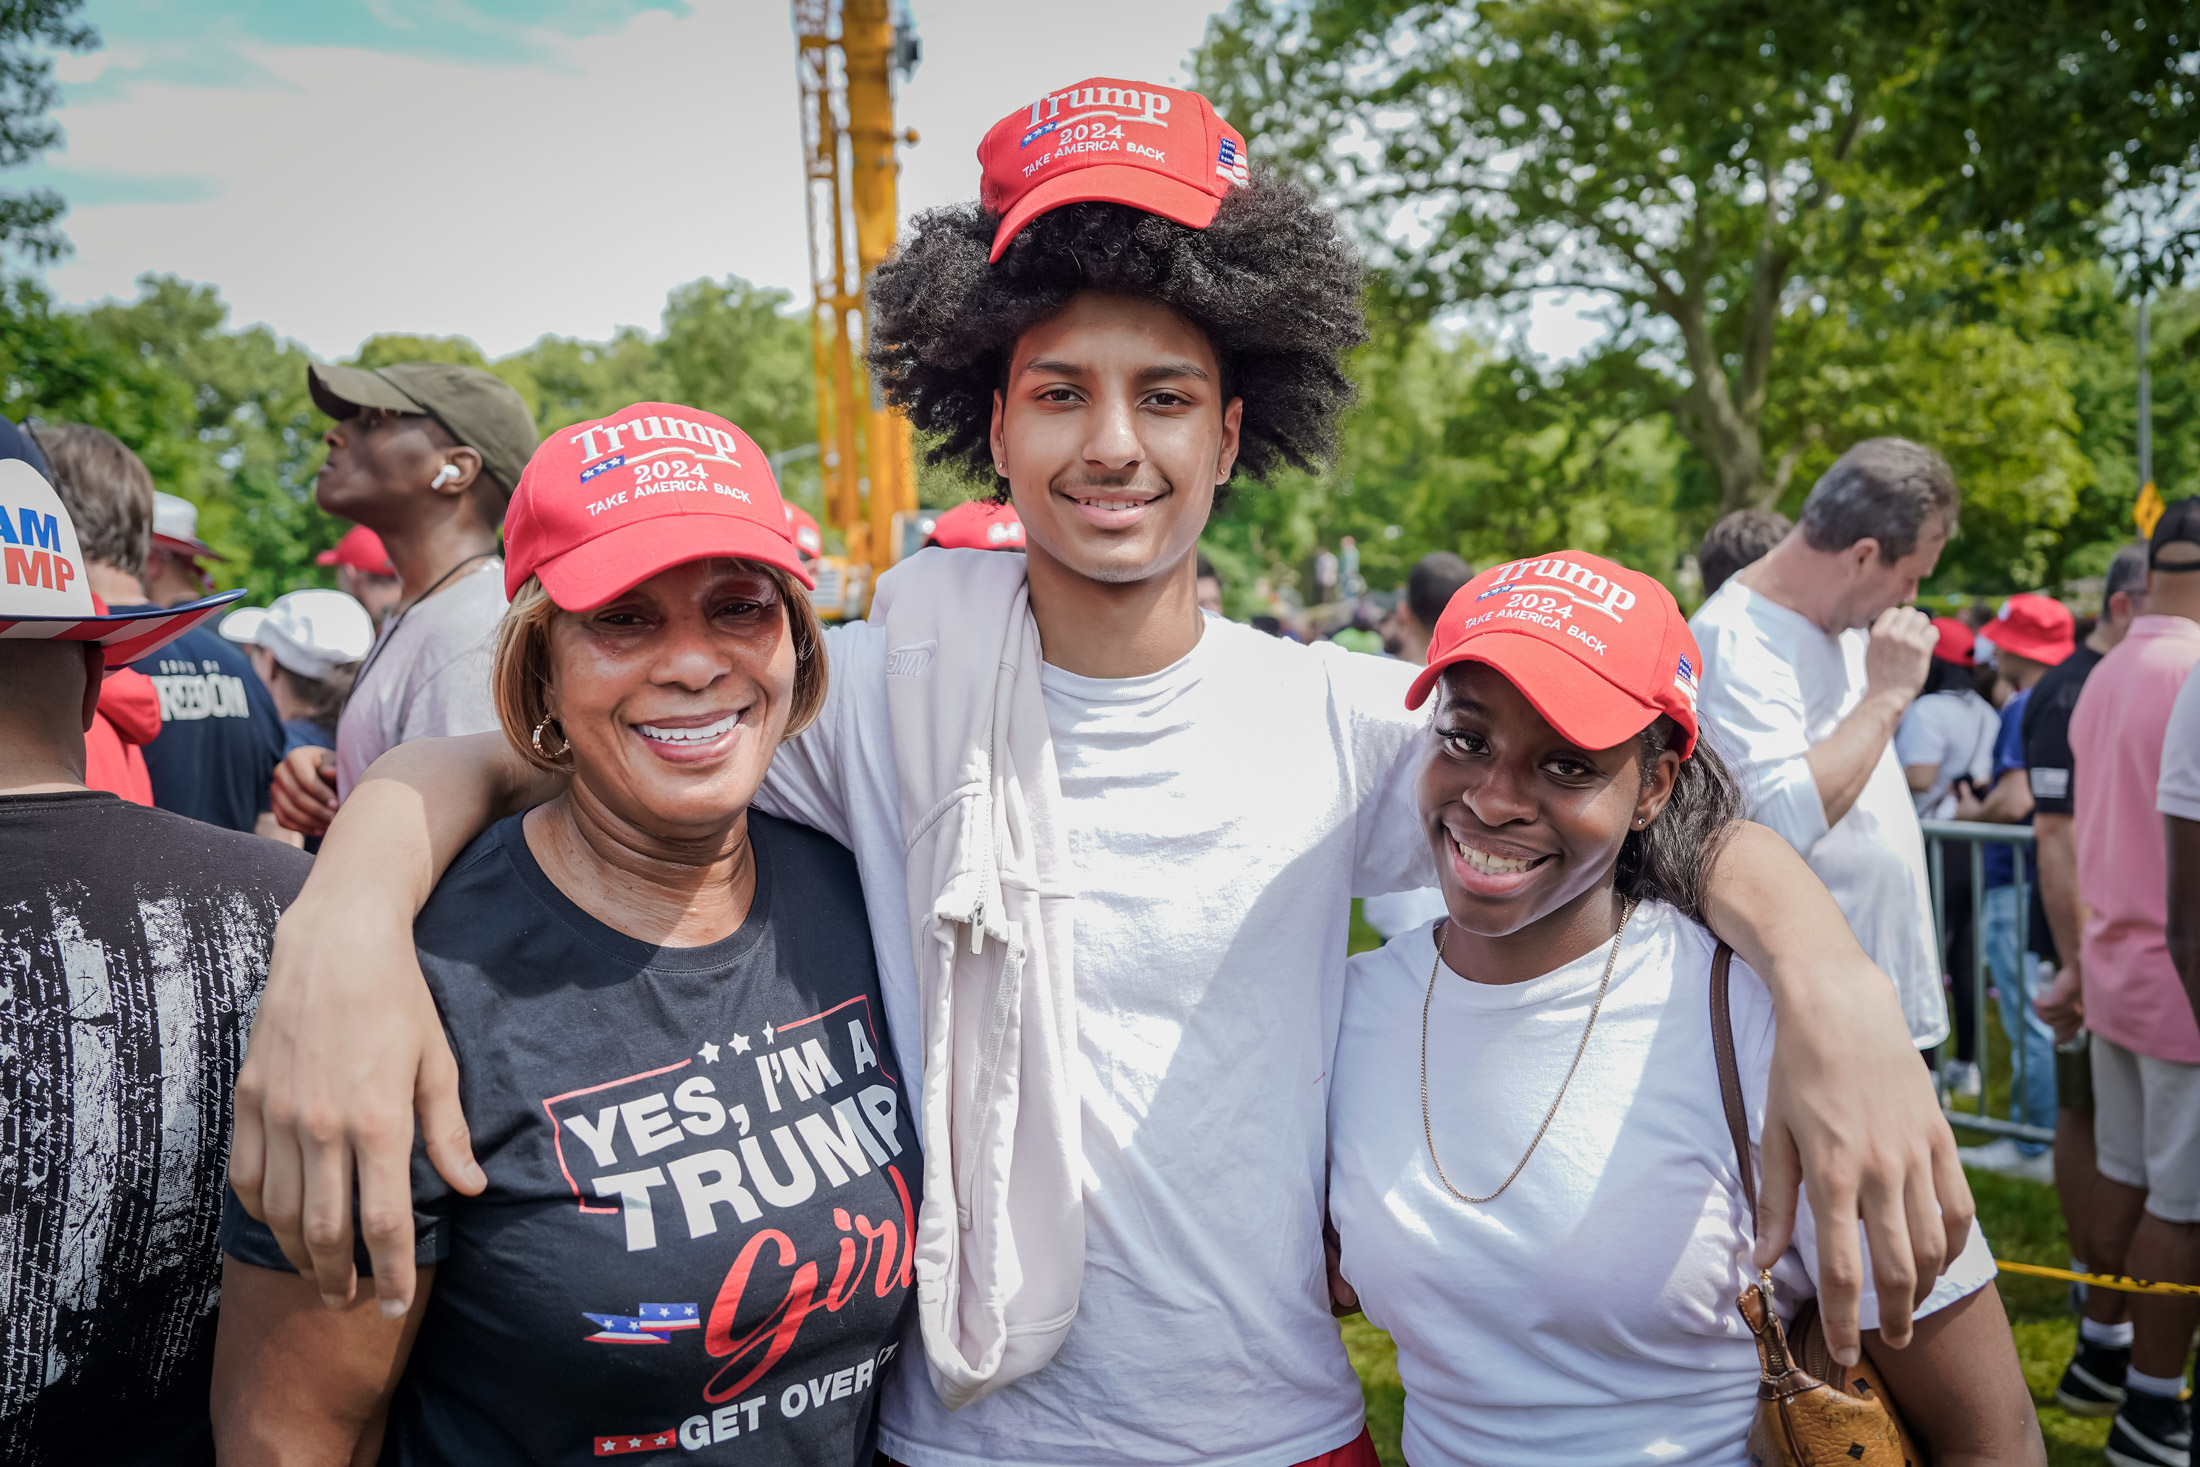 Bà Erica Deaver (trái), 60 tuổi, tham dự một cuộc vận động tranh cử của cựu Tổng thống Donald Trump ở South Bronx, thành phố New York, hôm 23/05/2024. (Ảnh: Samira Bouaou/The Epoch Times)